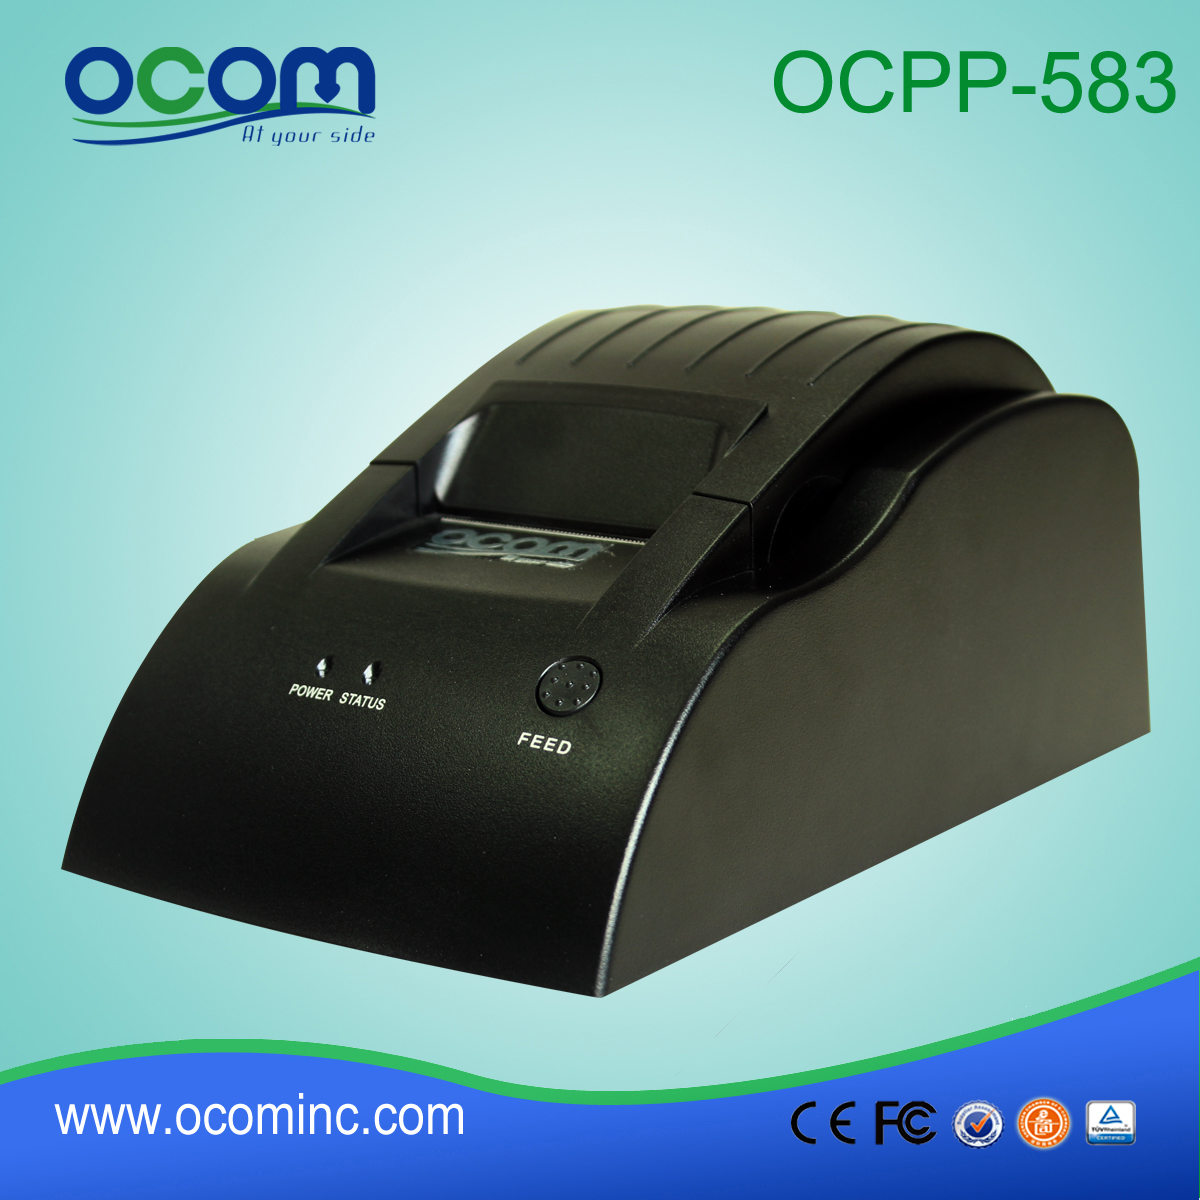 Φτηνές Μοντέλο OCPP-583-U 58mm POS Σύστημα POS Θερμικός Εκτυπωτής εισιτηρίων